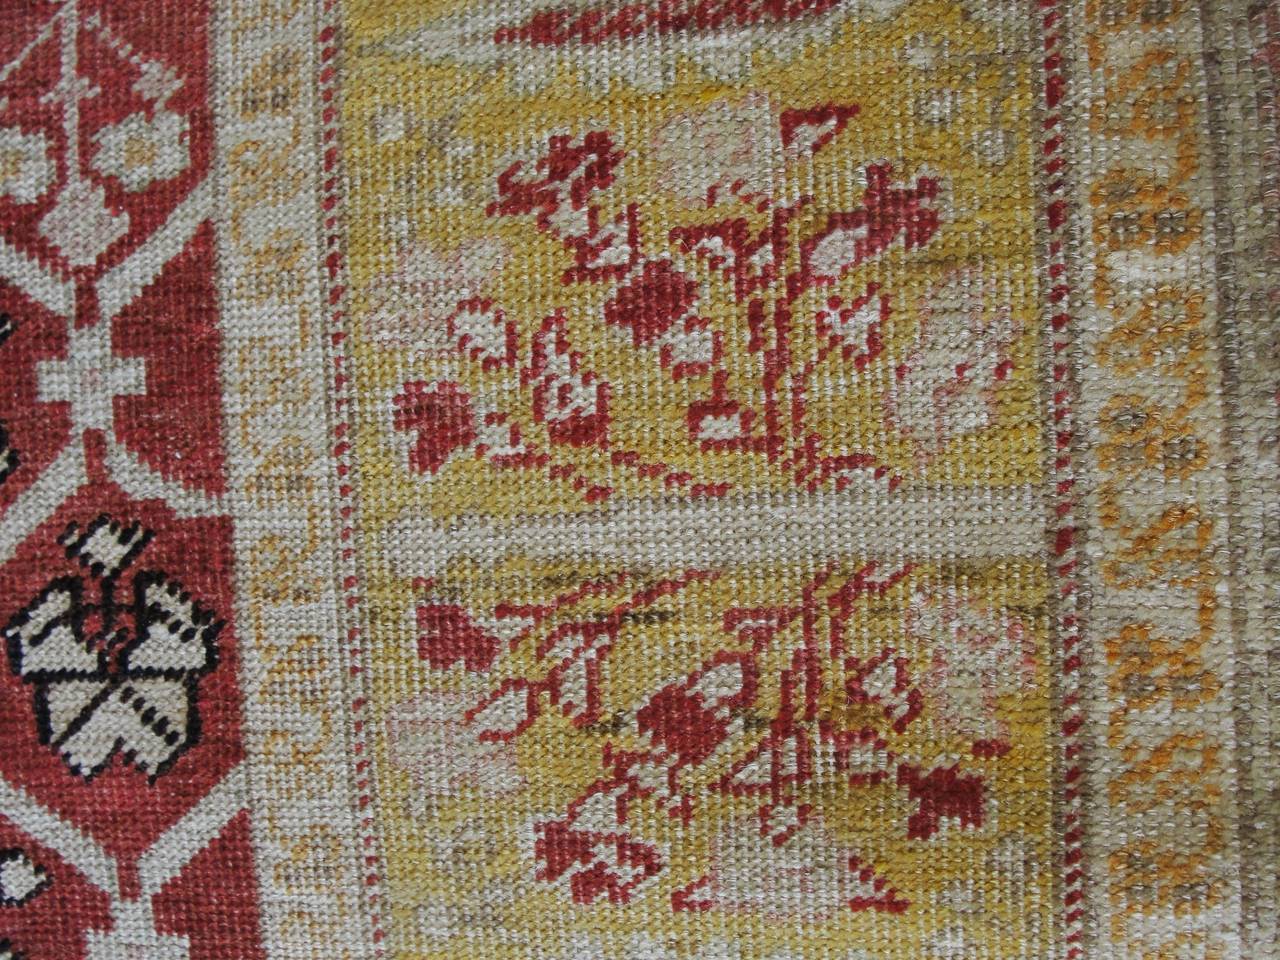 Antique Turkish Oushak Rug, 4' x 5'4